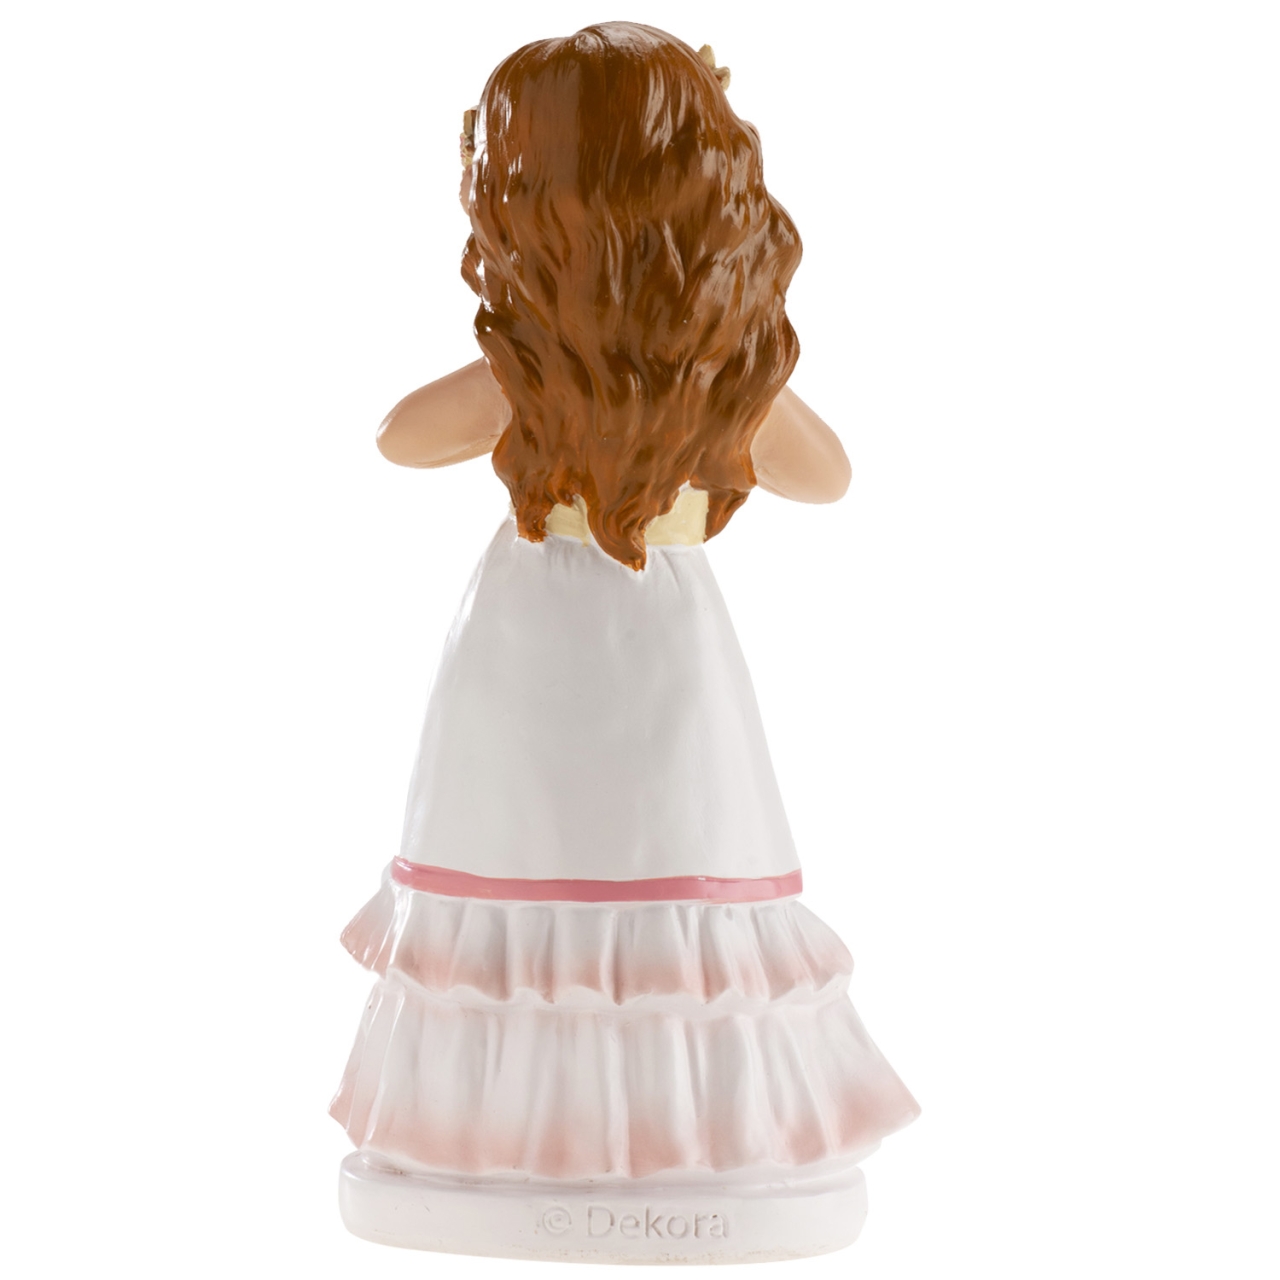 Tortendeko Figur für Kommunion Mädchen, 16 cm